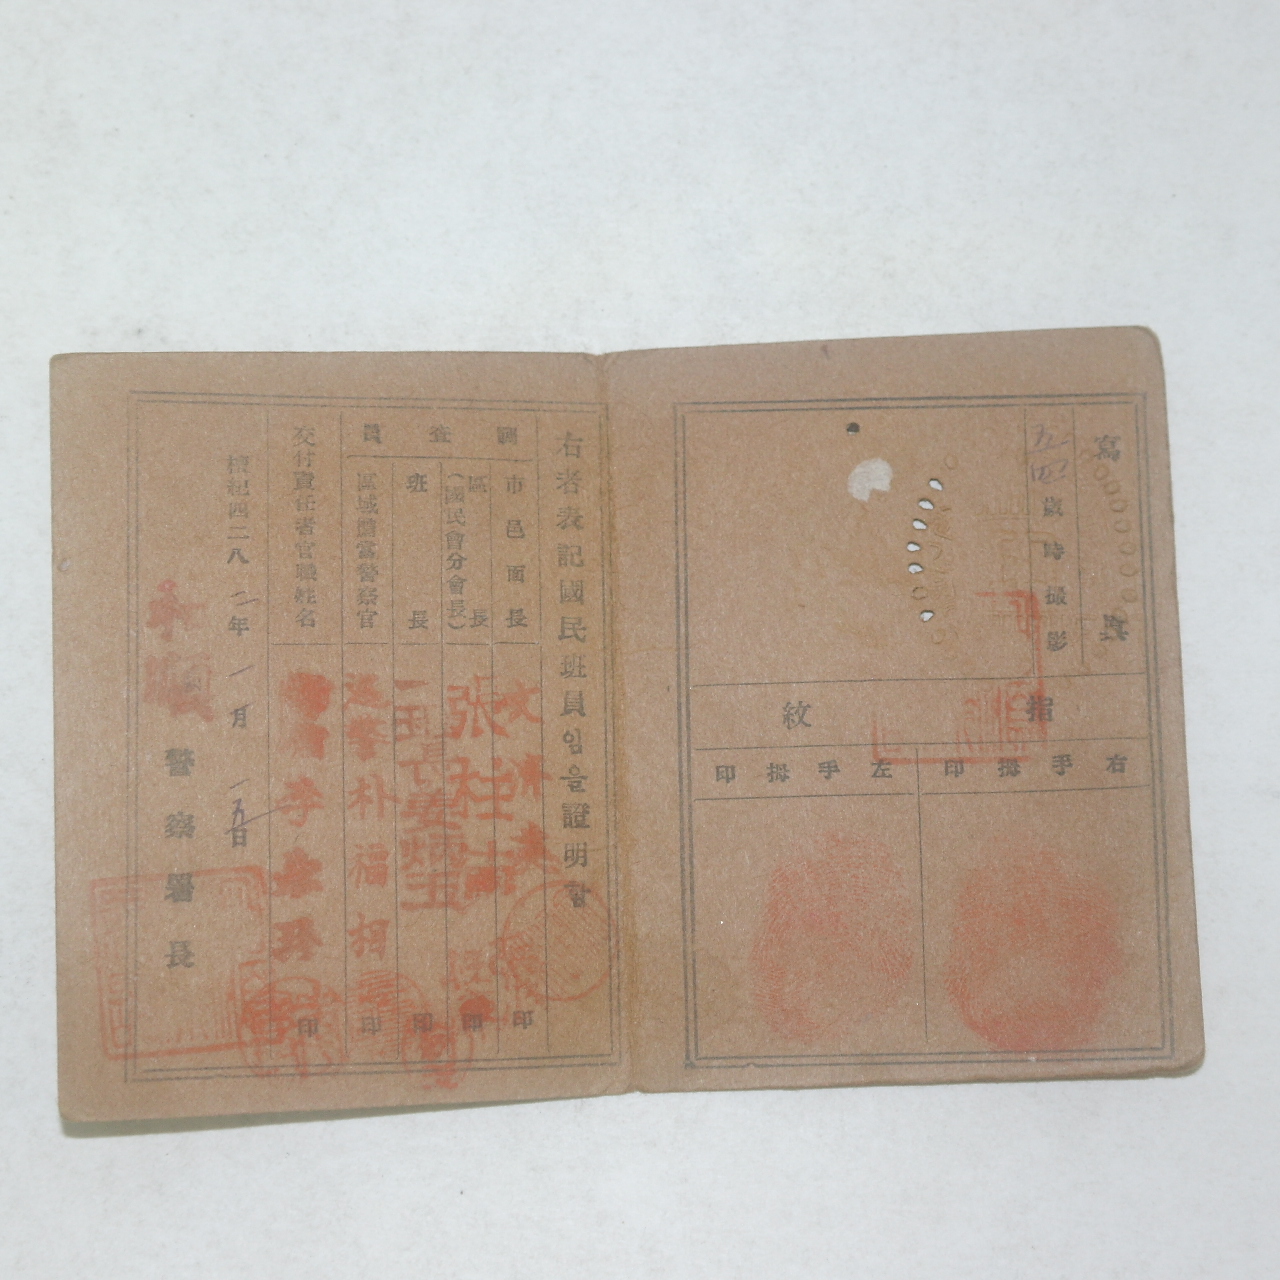 1949년 해방후 최초신분증 국민증(國民證)